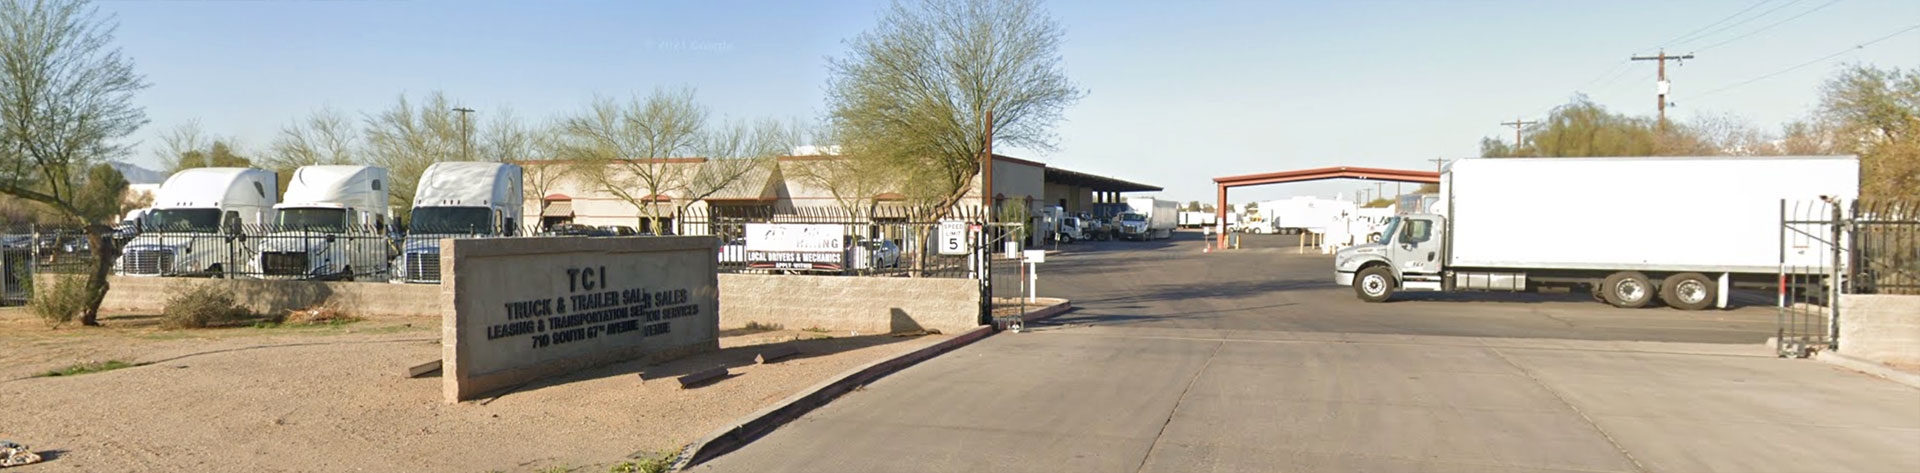 Street view of TCI Phoenix location